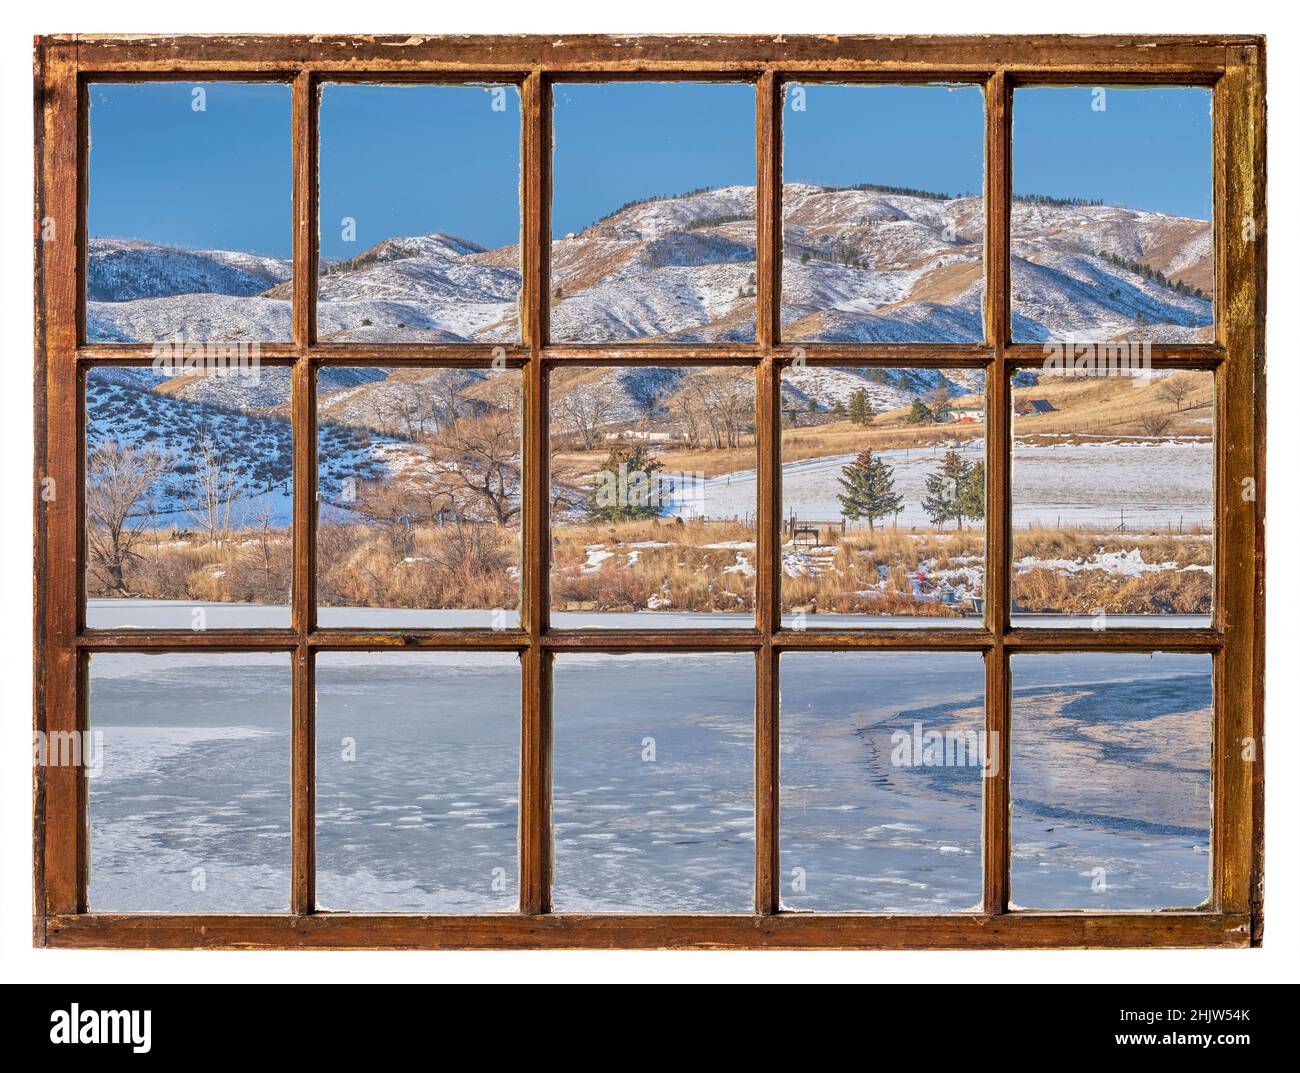 Tôt le matin d'hiver, au pied du Colorado des montagnes Rocheuses, vue sur les fenêtres à guillotine d'époque Banque D'Images